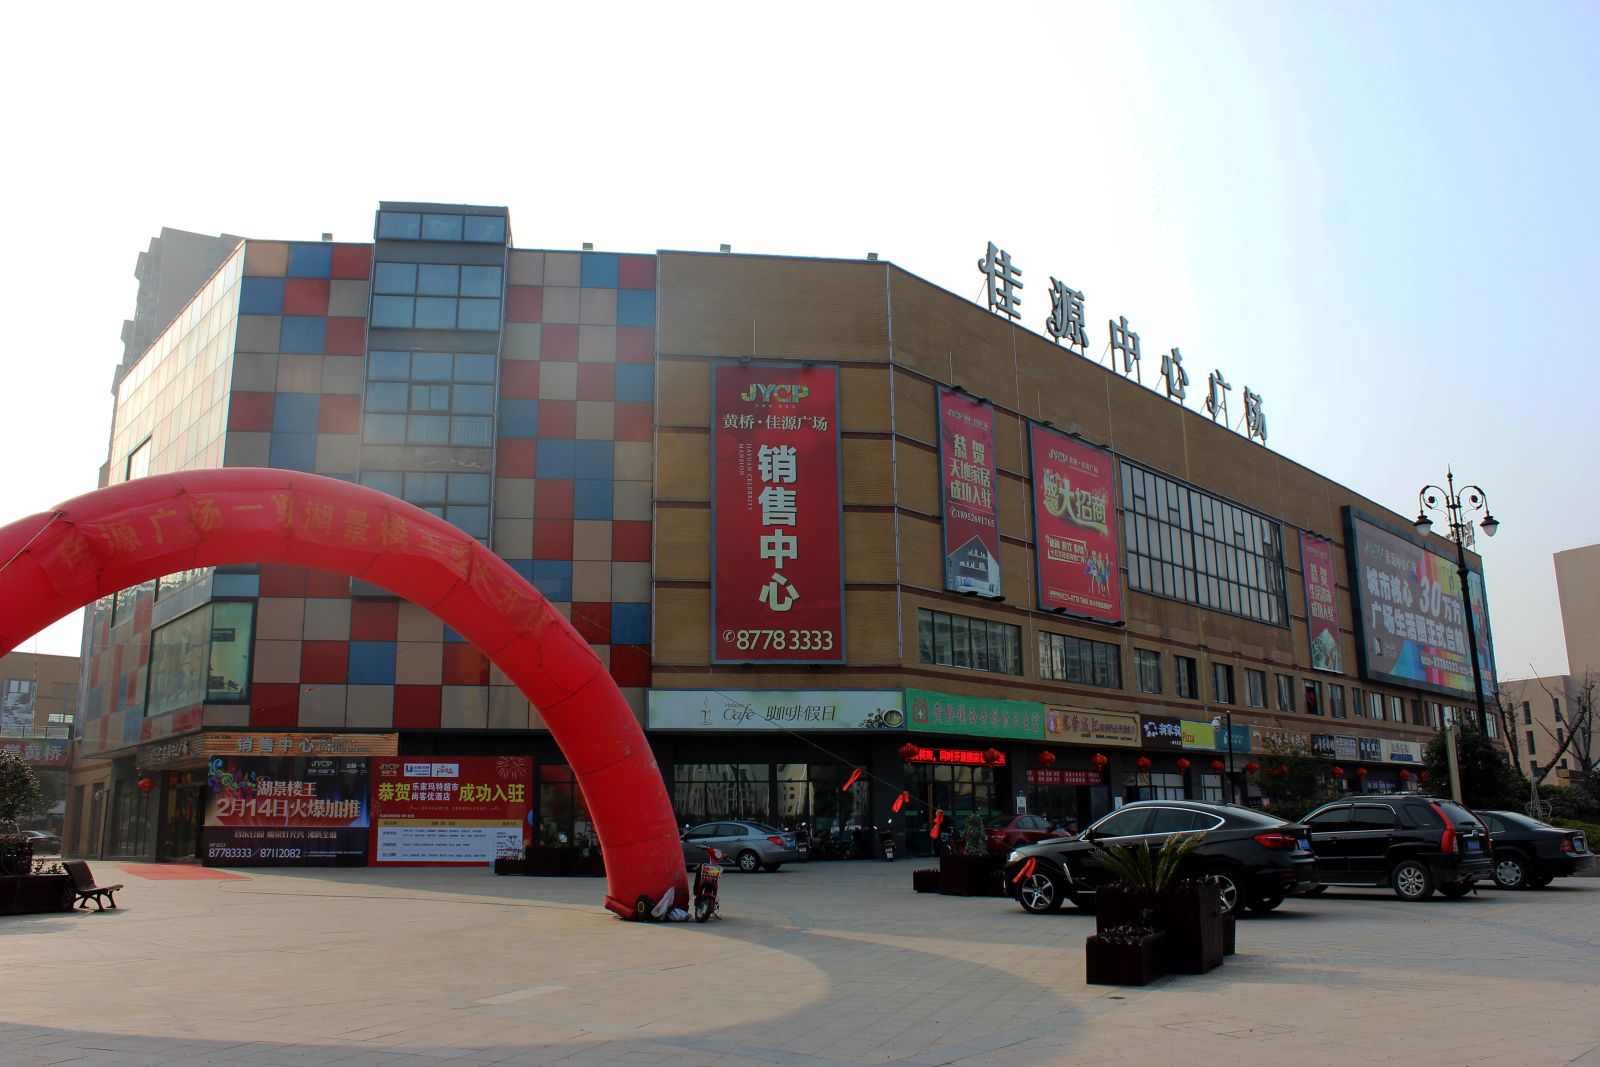 Jiayuan International Group công ty bất động sản Trung Quốc trên bờ vực vỡ nợ